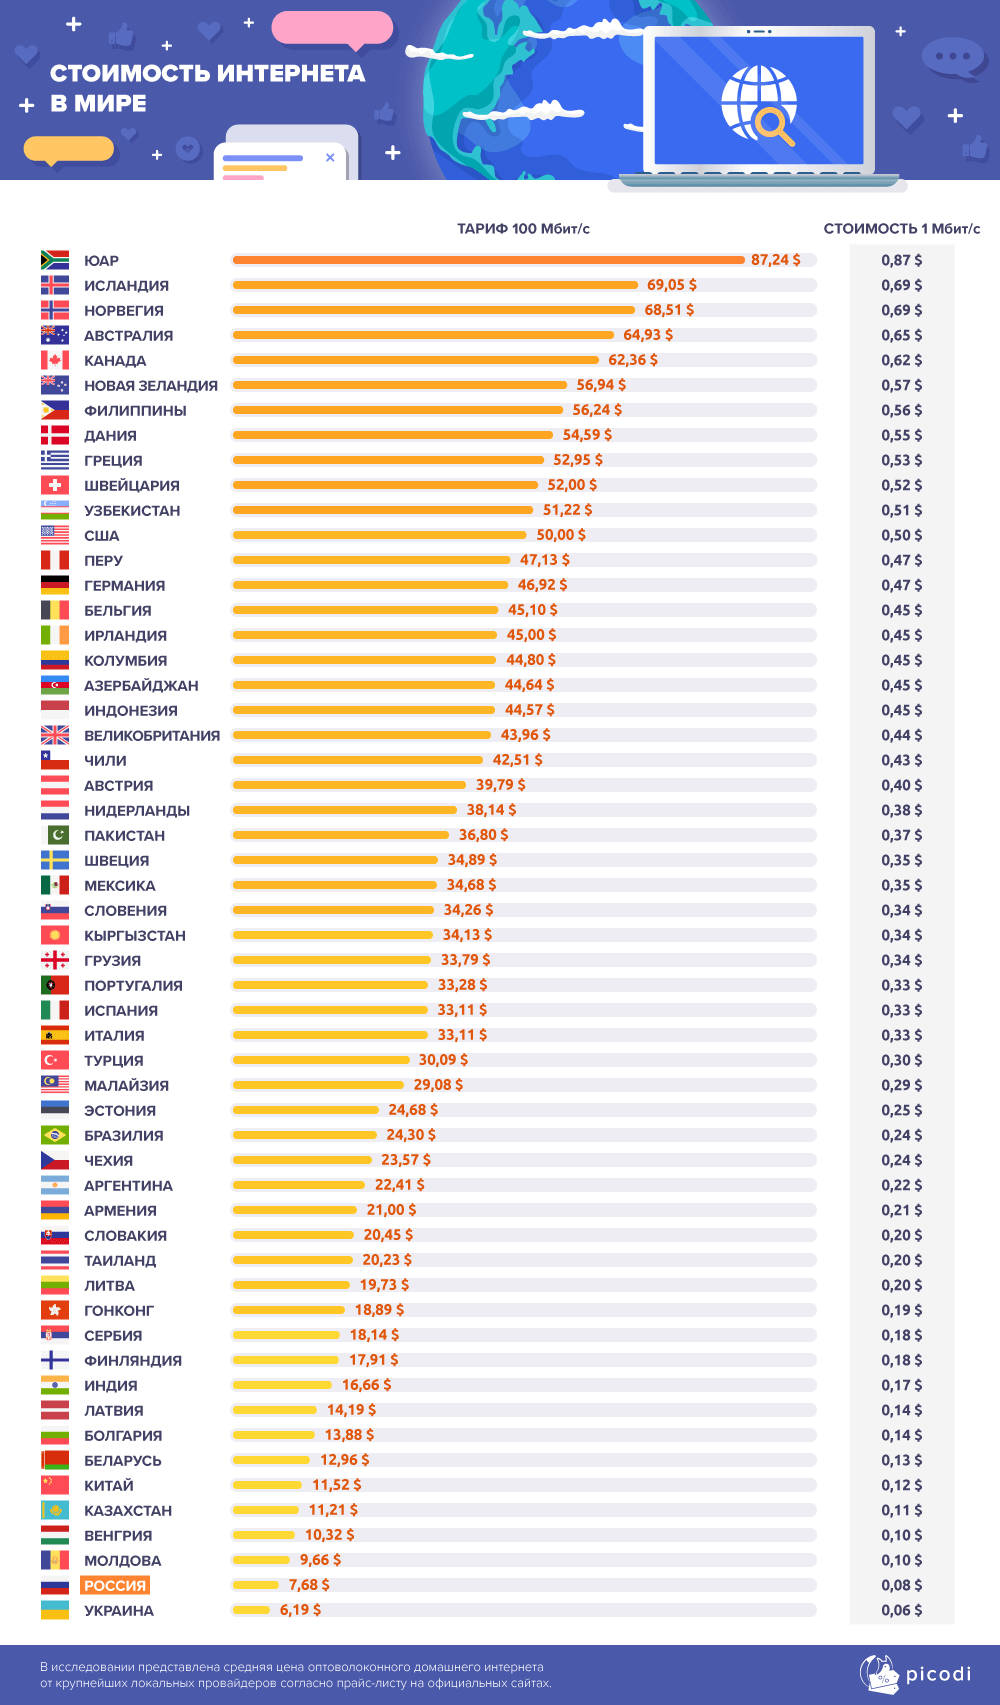 Аналитики компании Picodi сравнили цены на услуги проводного доступа в интернет 233 провайдеров из 62 стран мира - 2